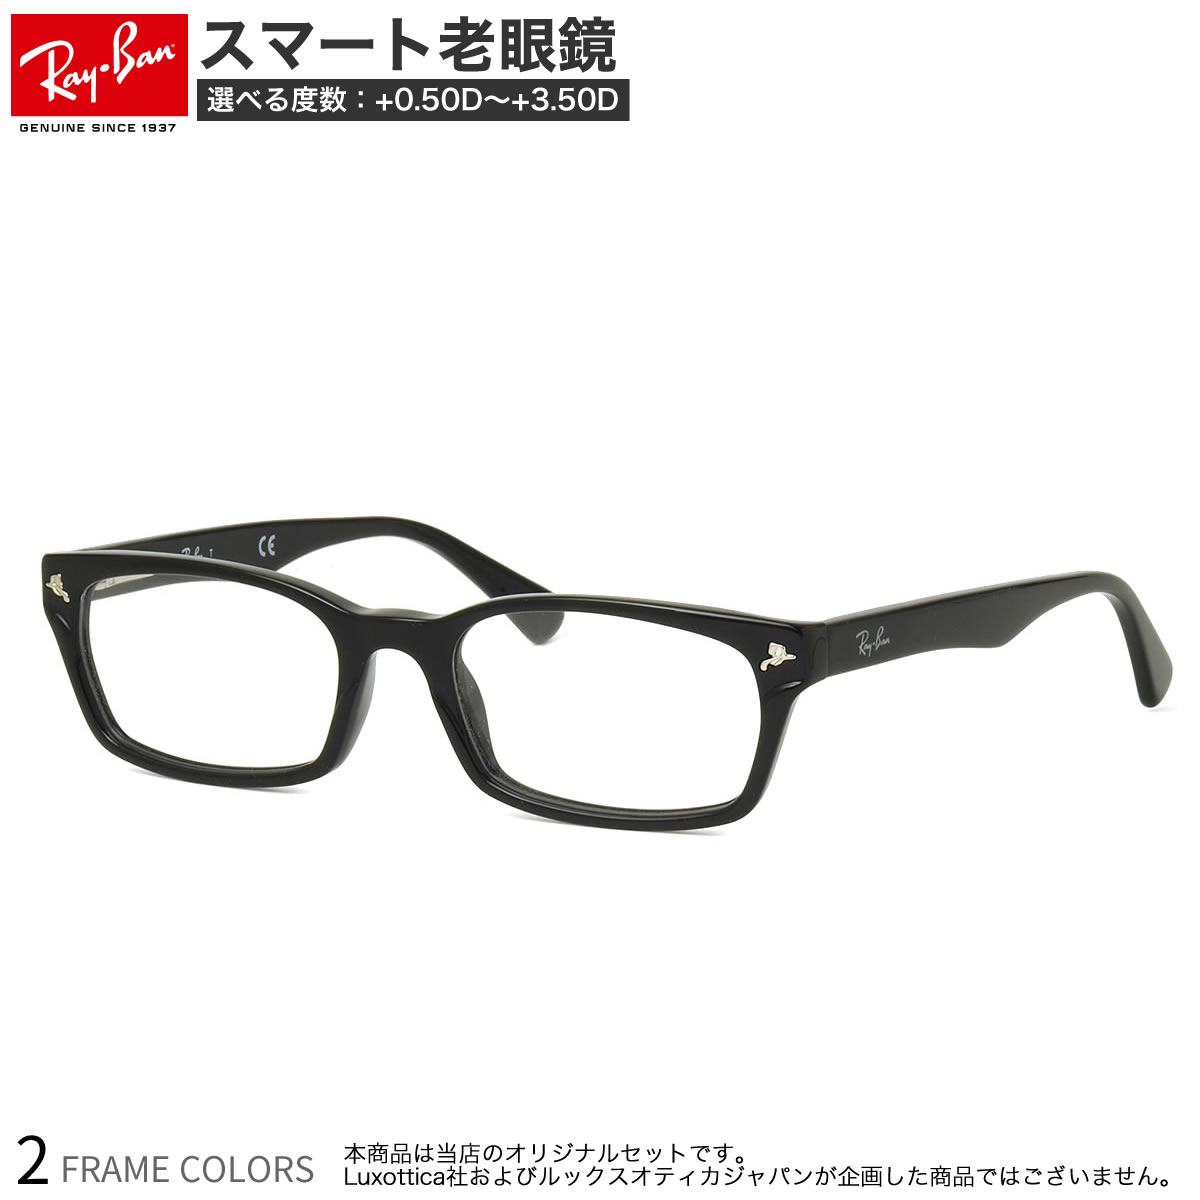 リーディンググラス レイバン RX5017A 52サイズ スマート老眼鏡 ブルーライトカット PCメガネ UVカット 紫外線カット Ray-Ban あす楽対応 スマホ老眼 リーディンググラス シニアグラス UV400 [OS]